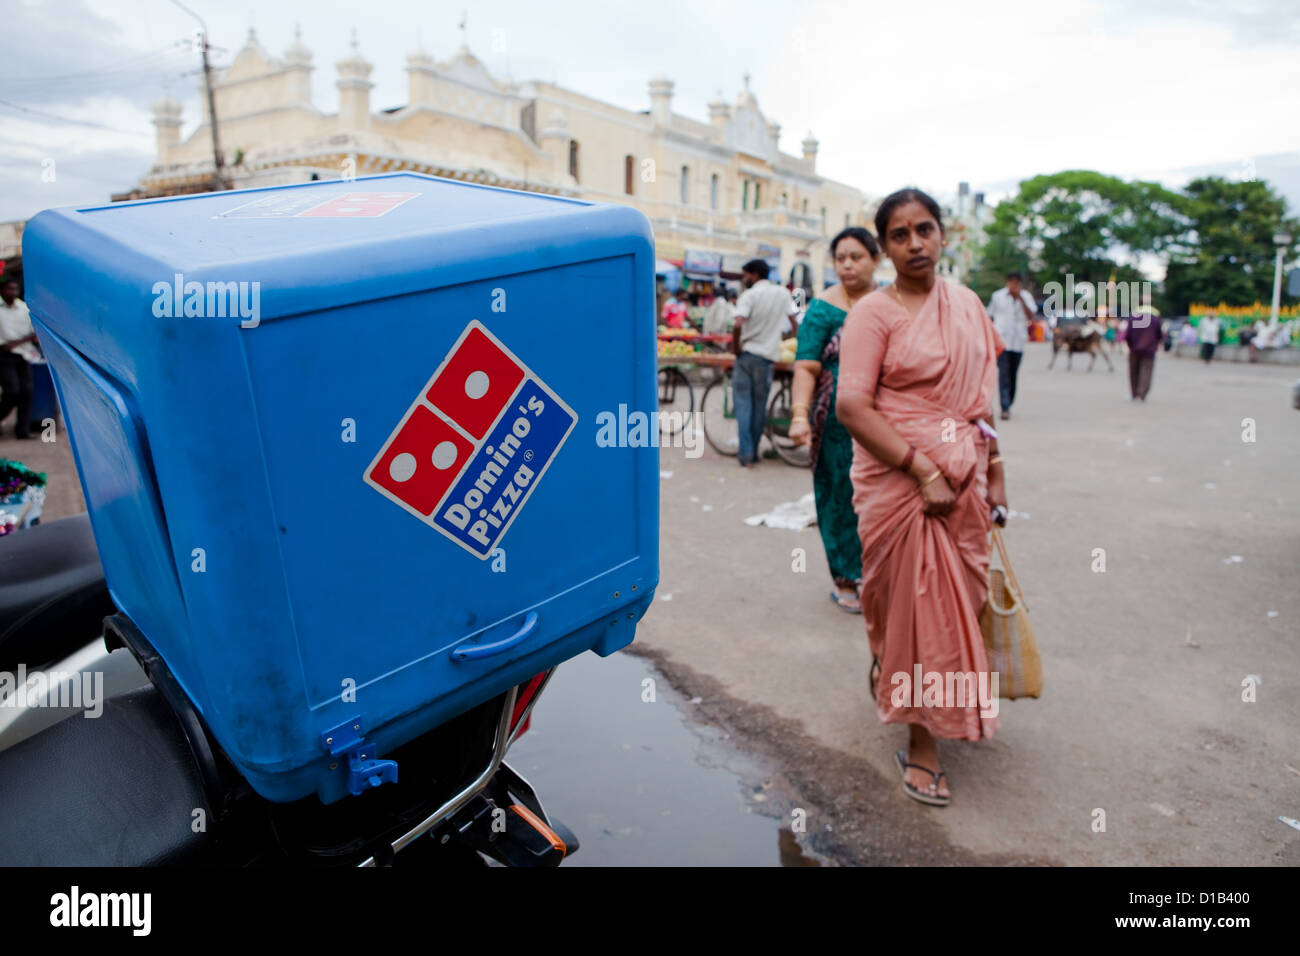 El mundo moderno se reúne cada día de la vida tradicional en el mercado de Mysore Foto de stock